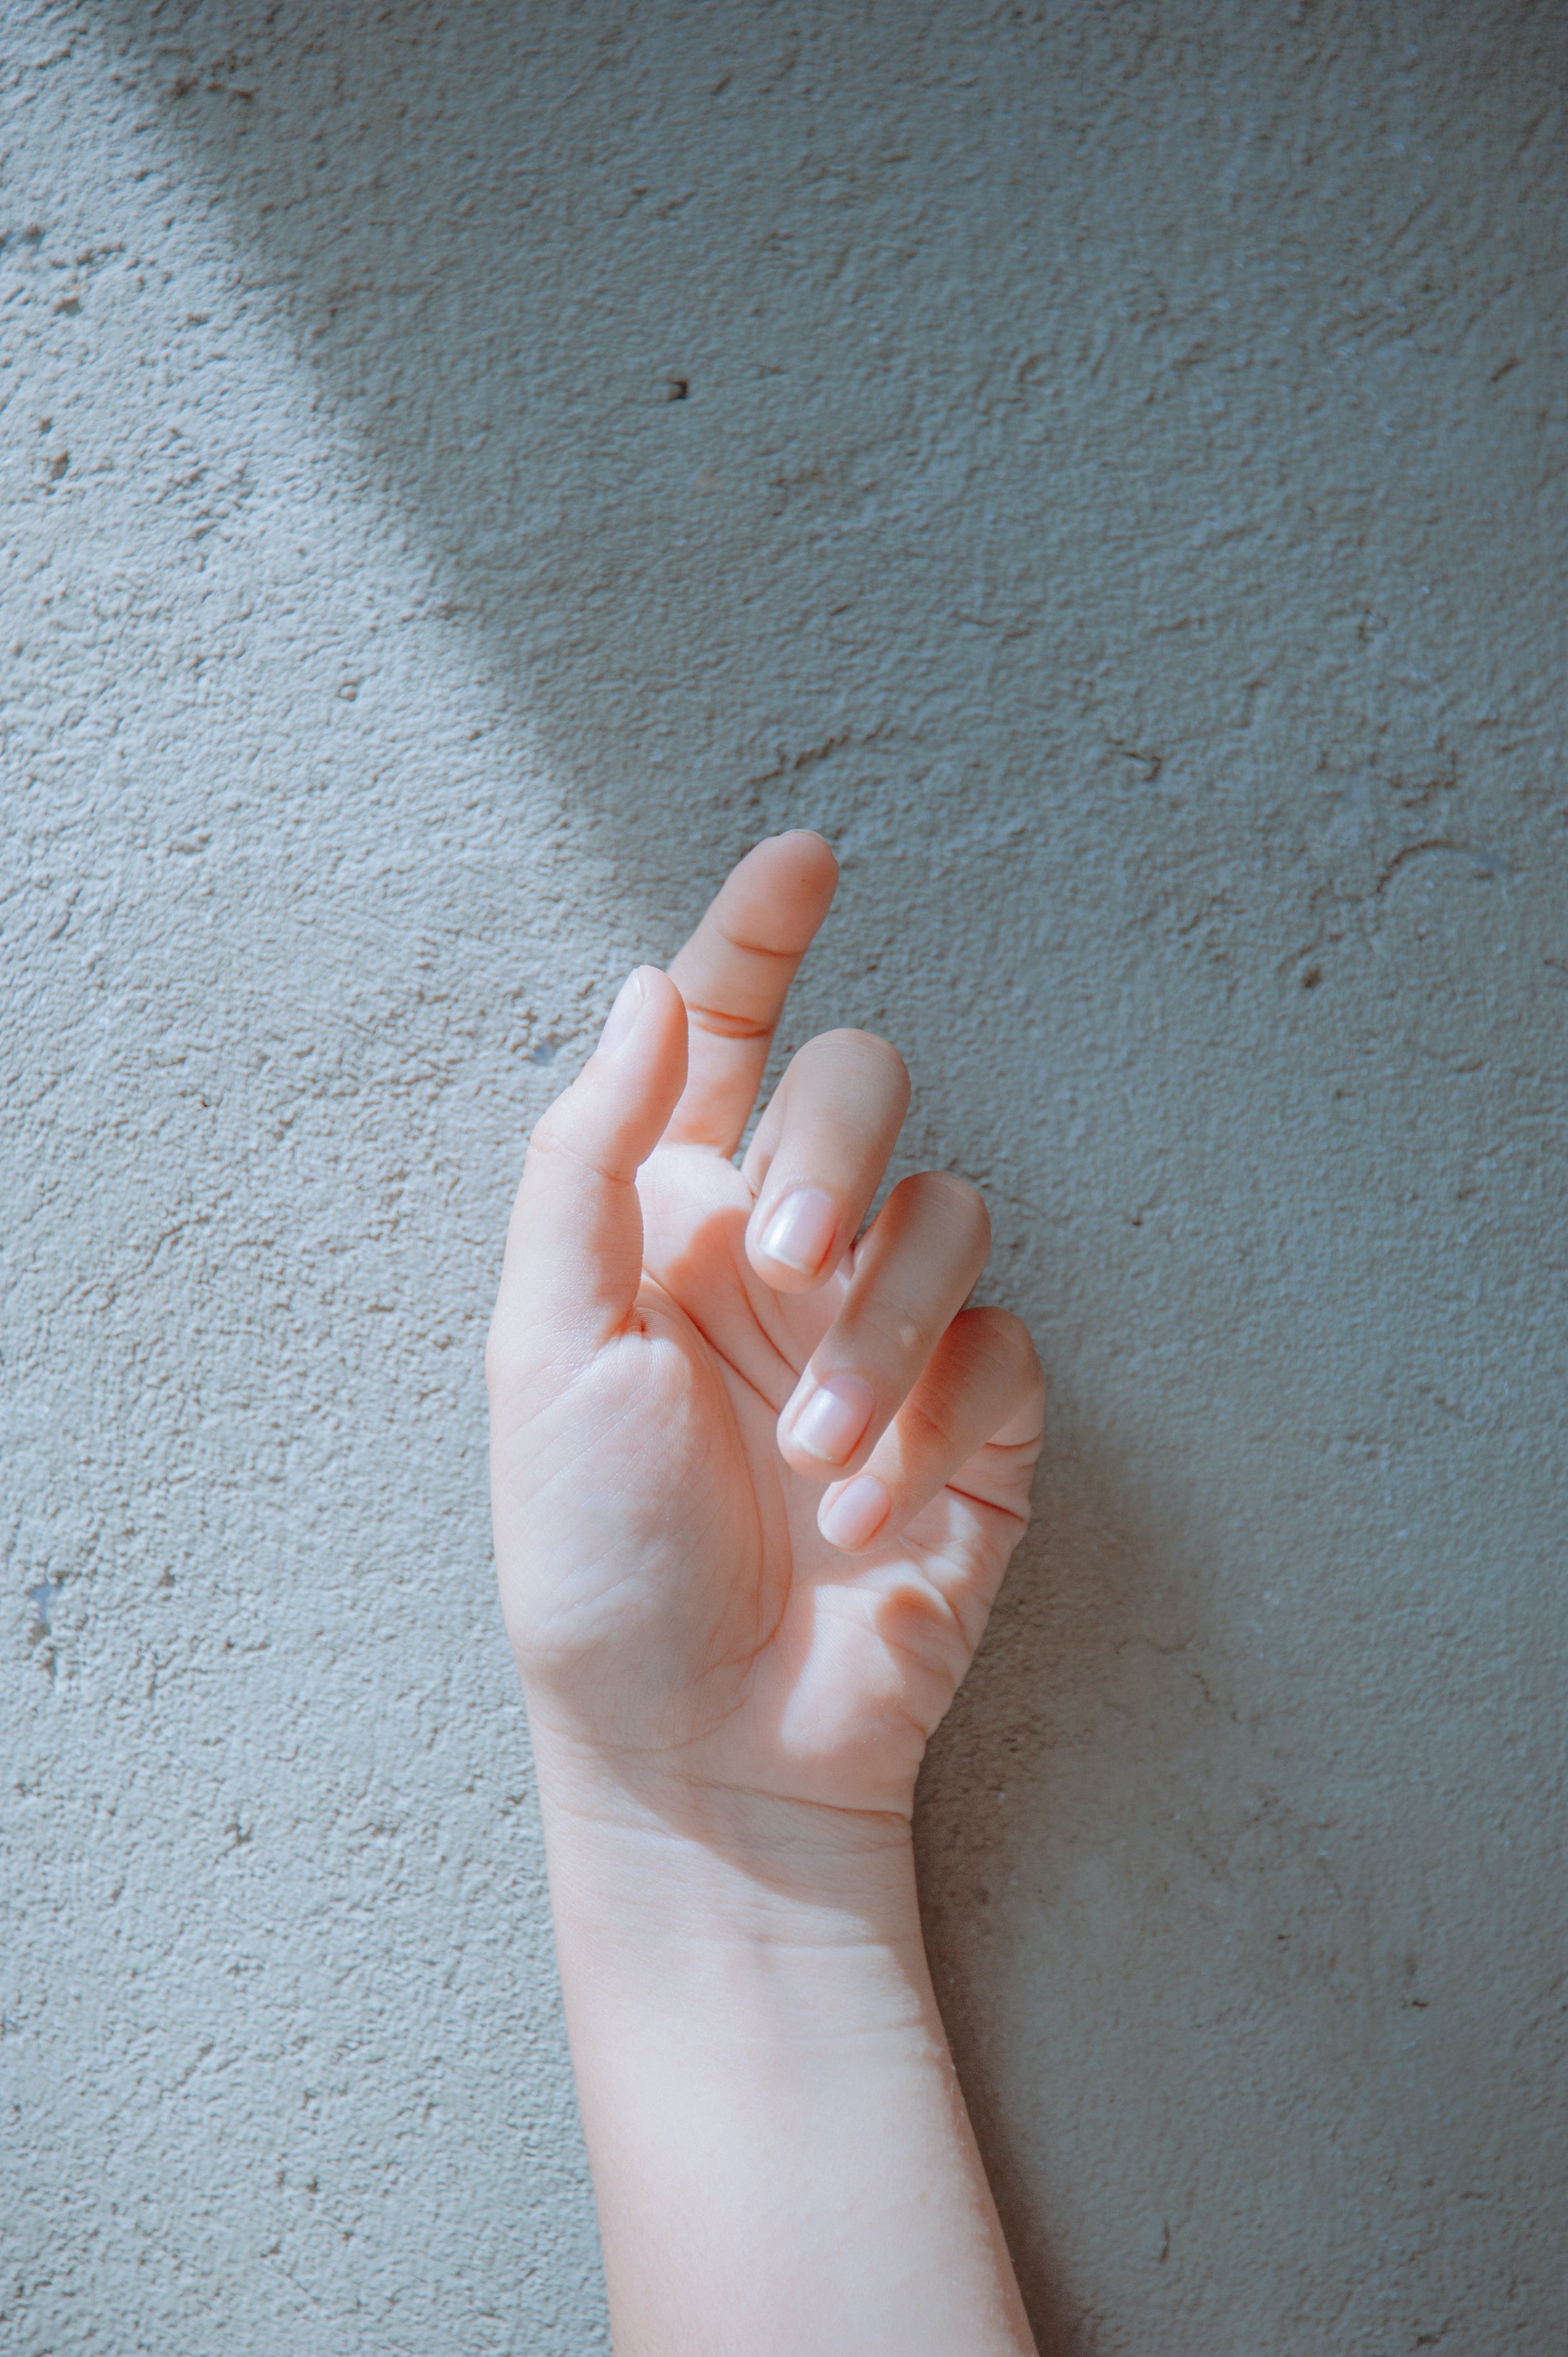 Dry hands | Source: Pexels